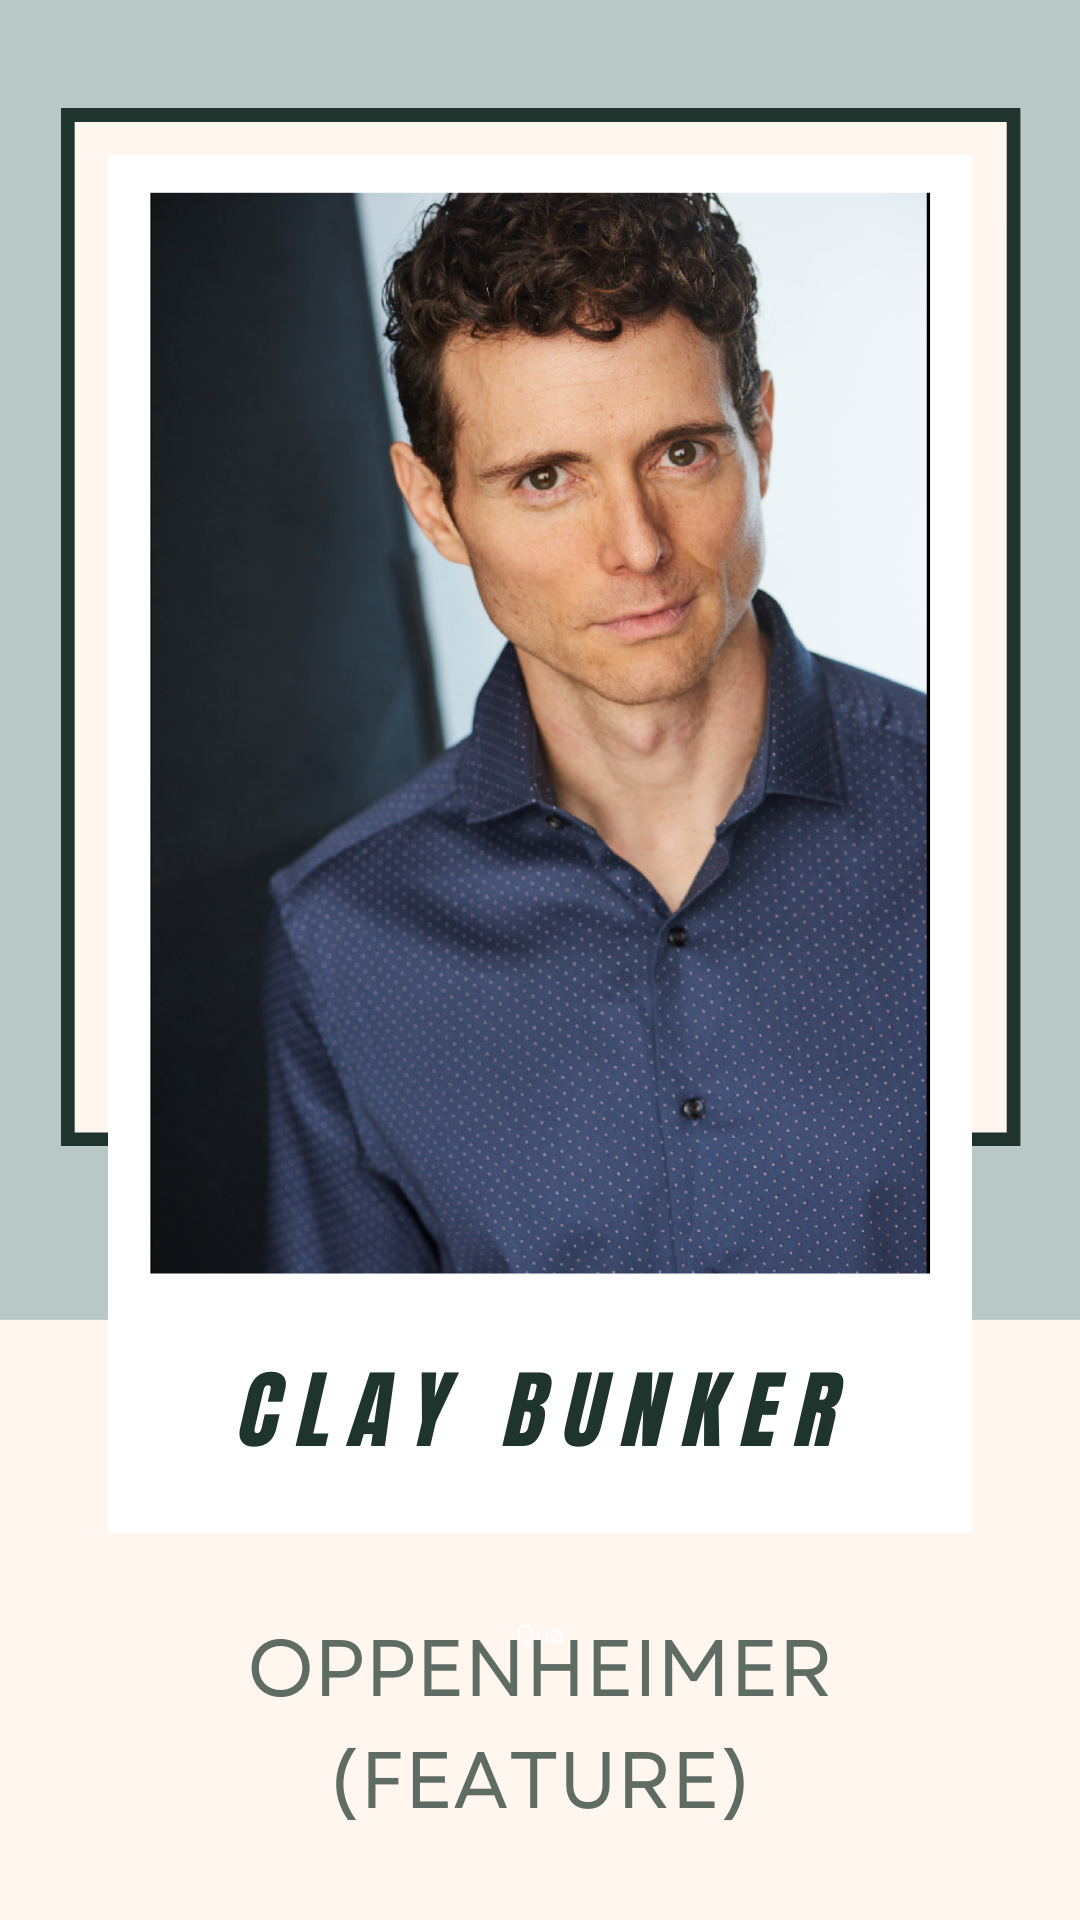 ACTOR CLAY BUNKER